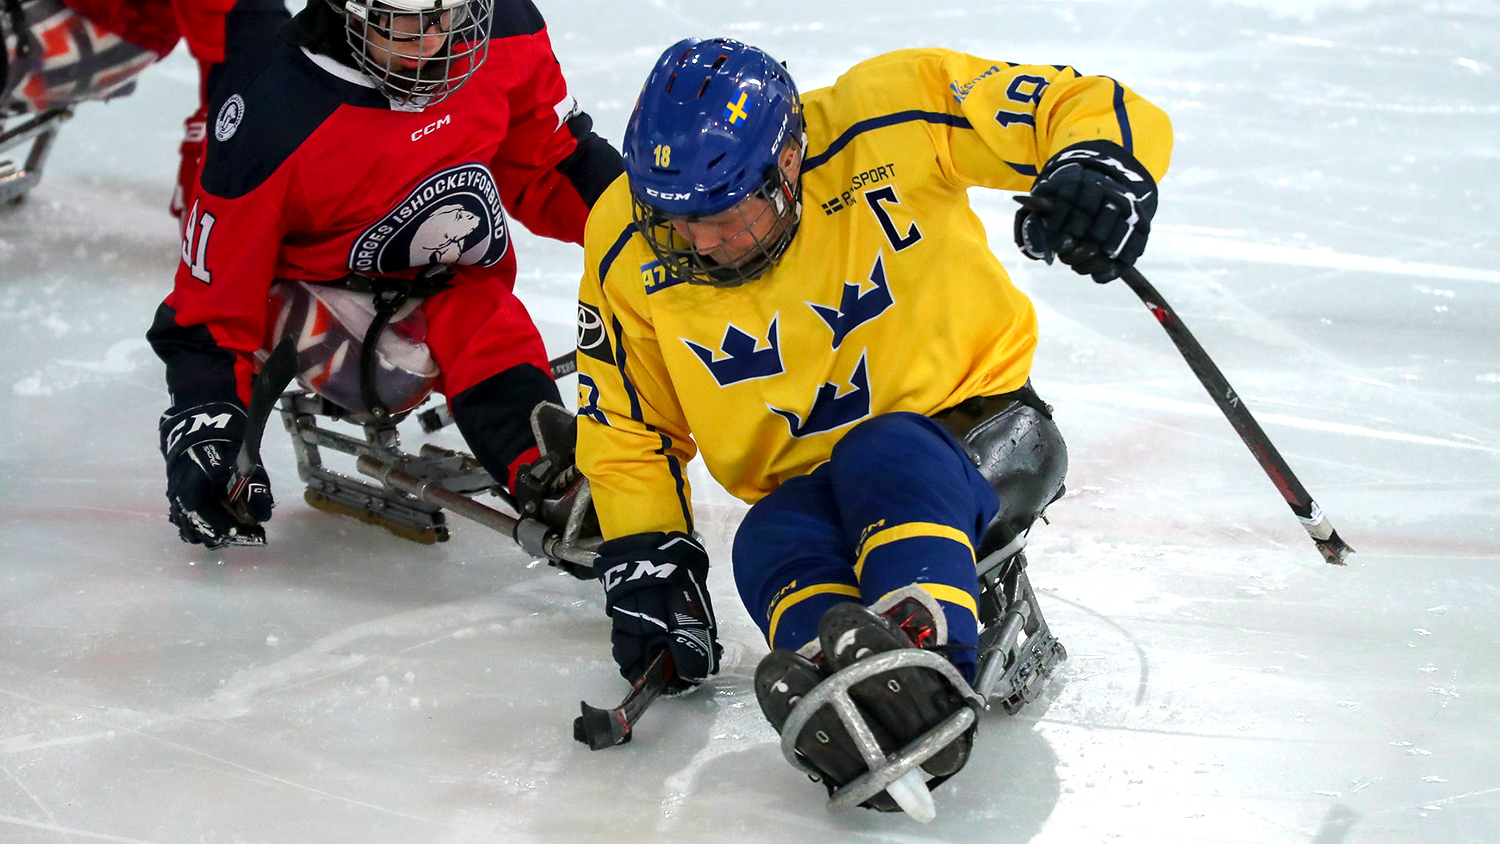 Sveriges lagkapten Peter Ojala i kamp med en norsk spelare.